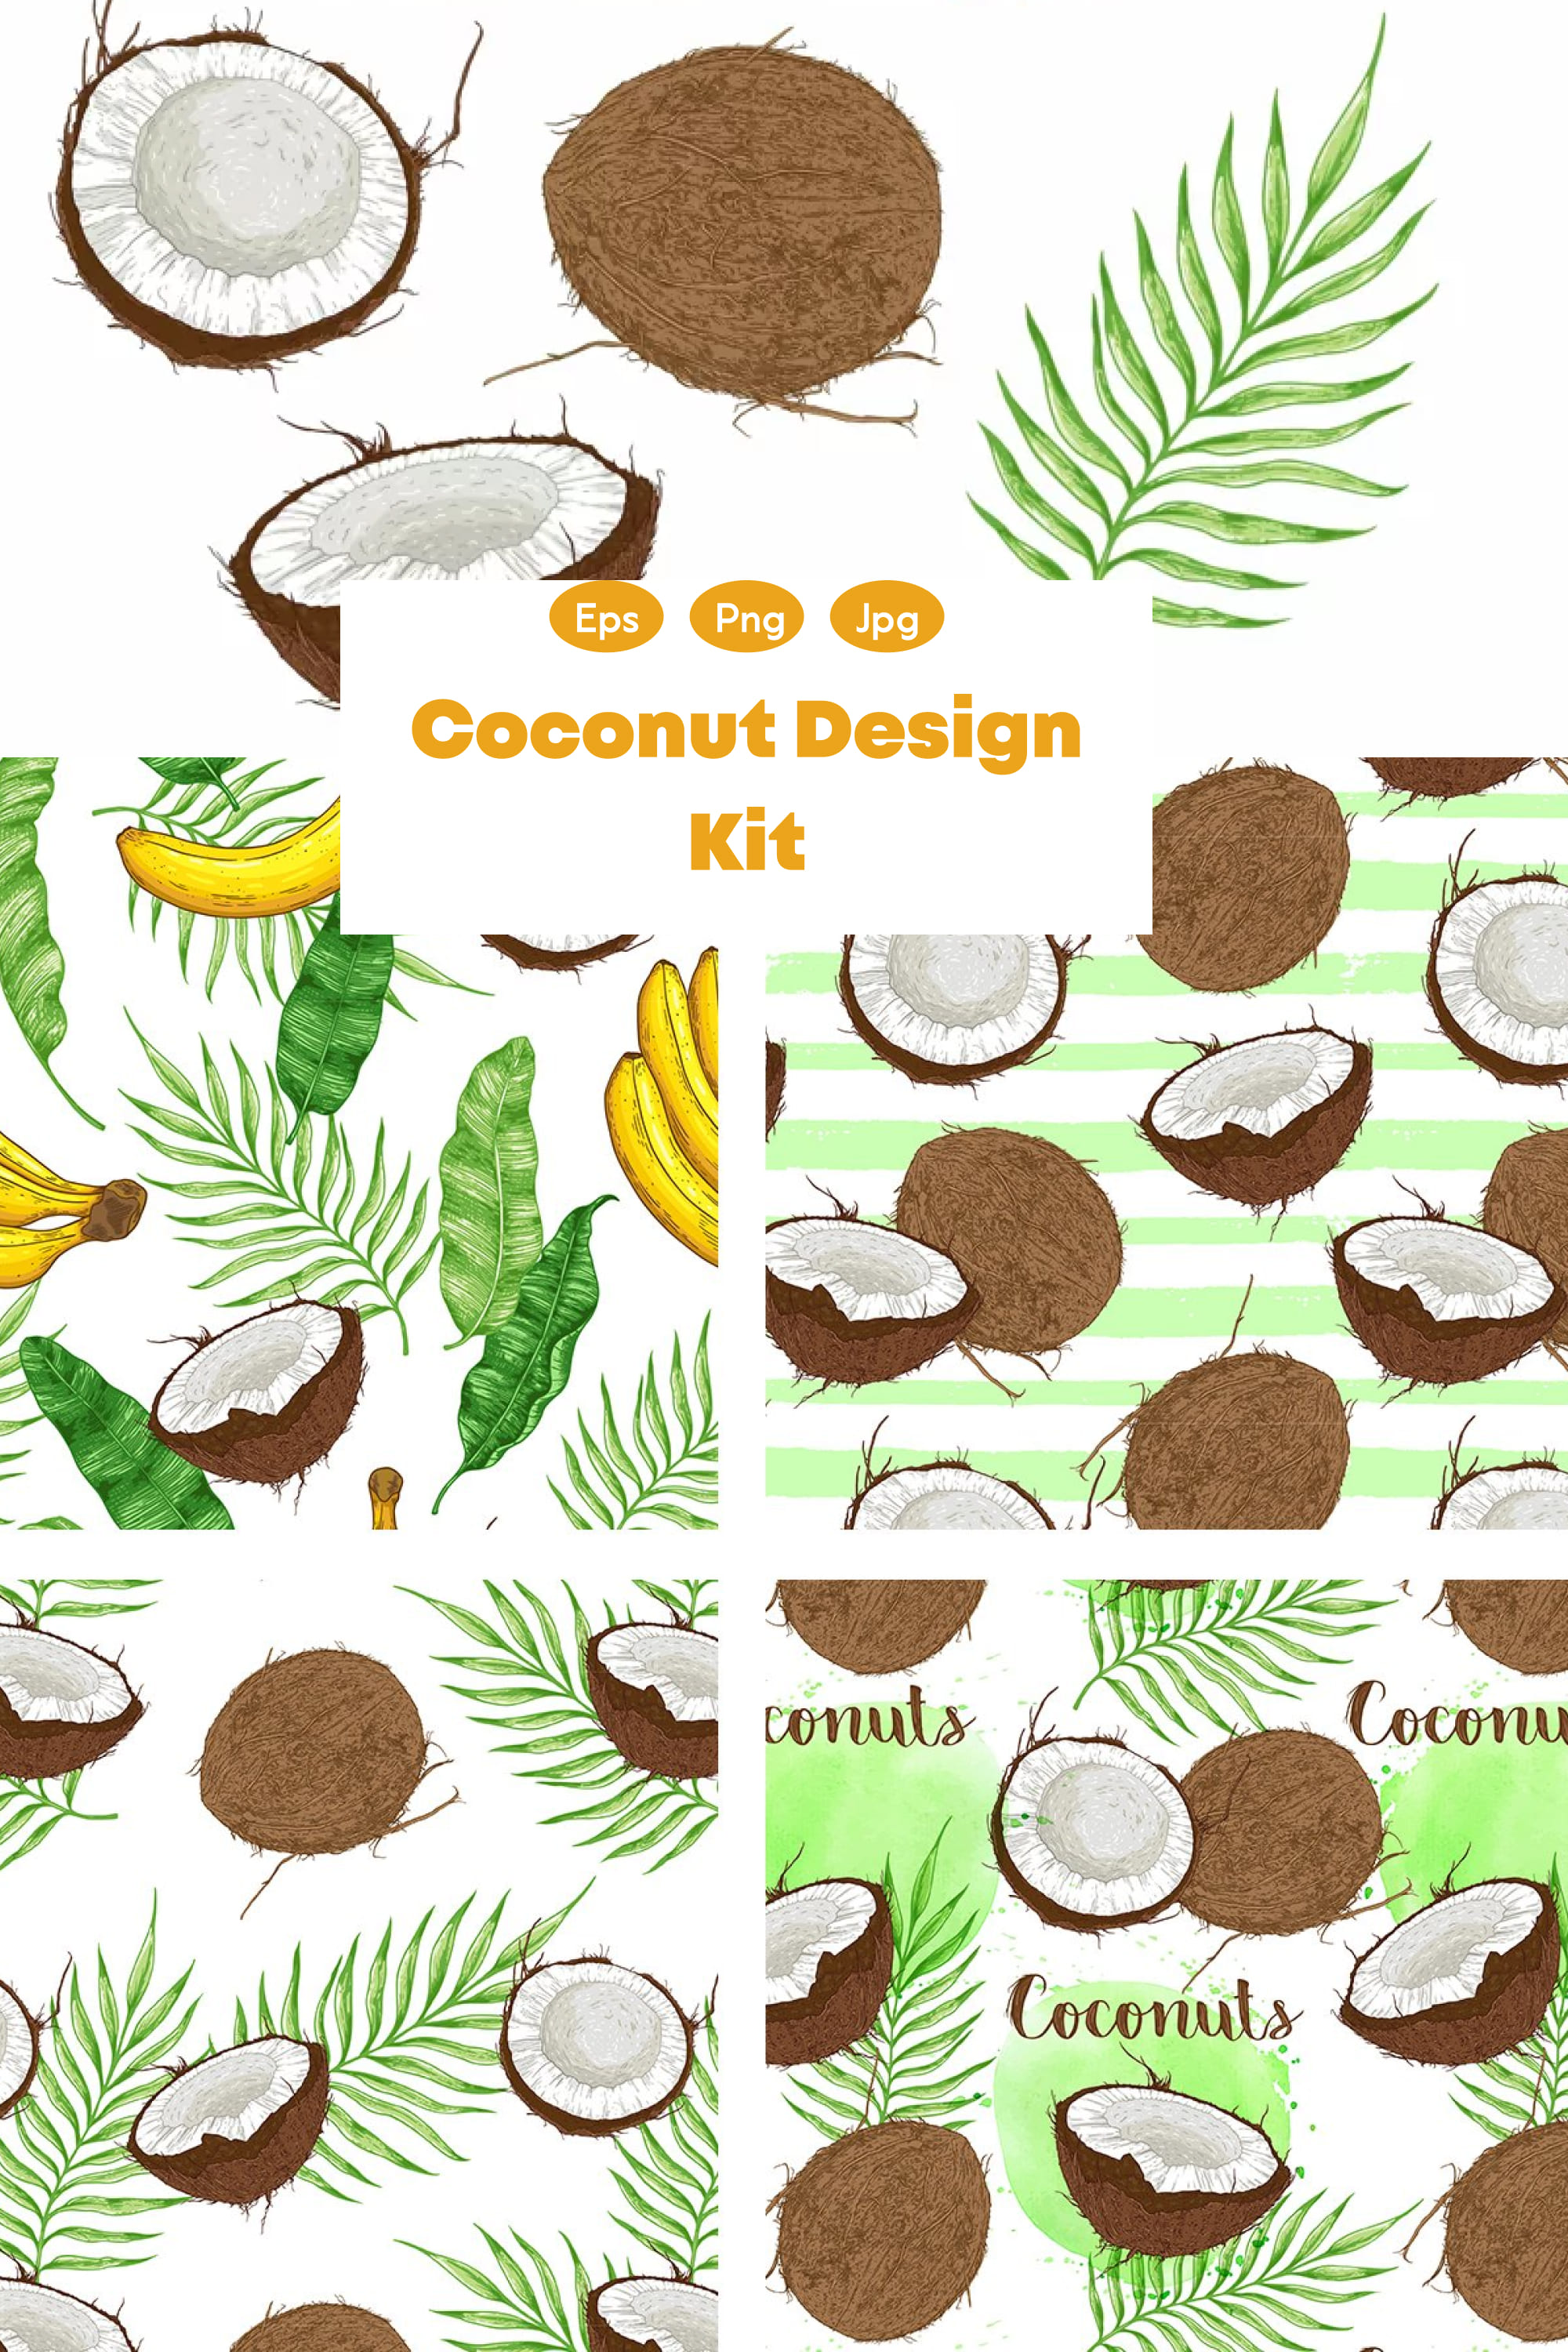 coconut design kit pinterest